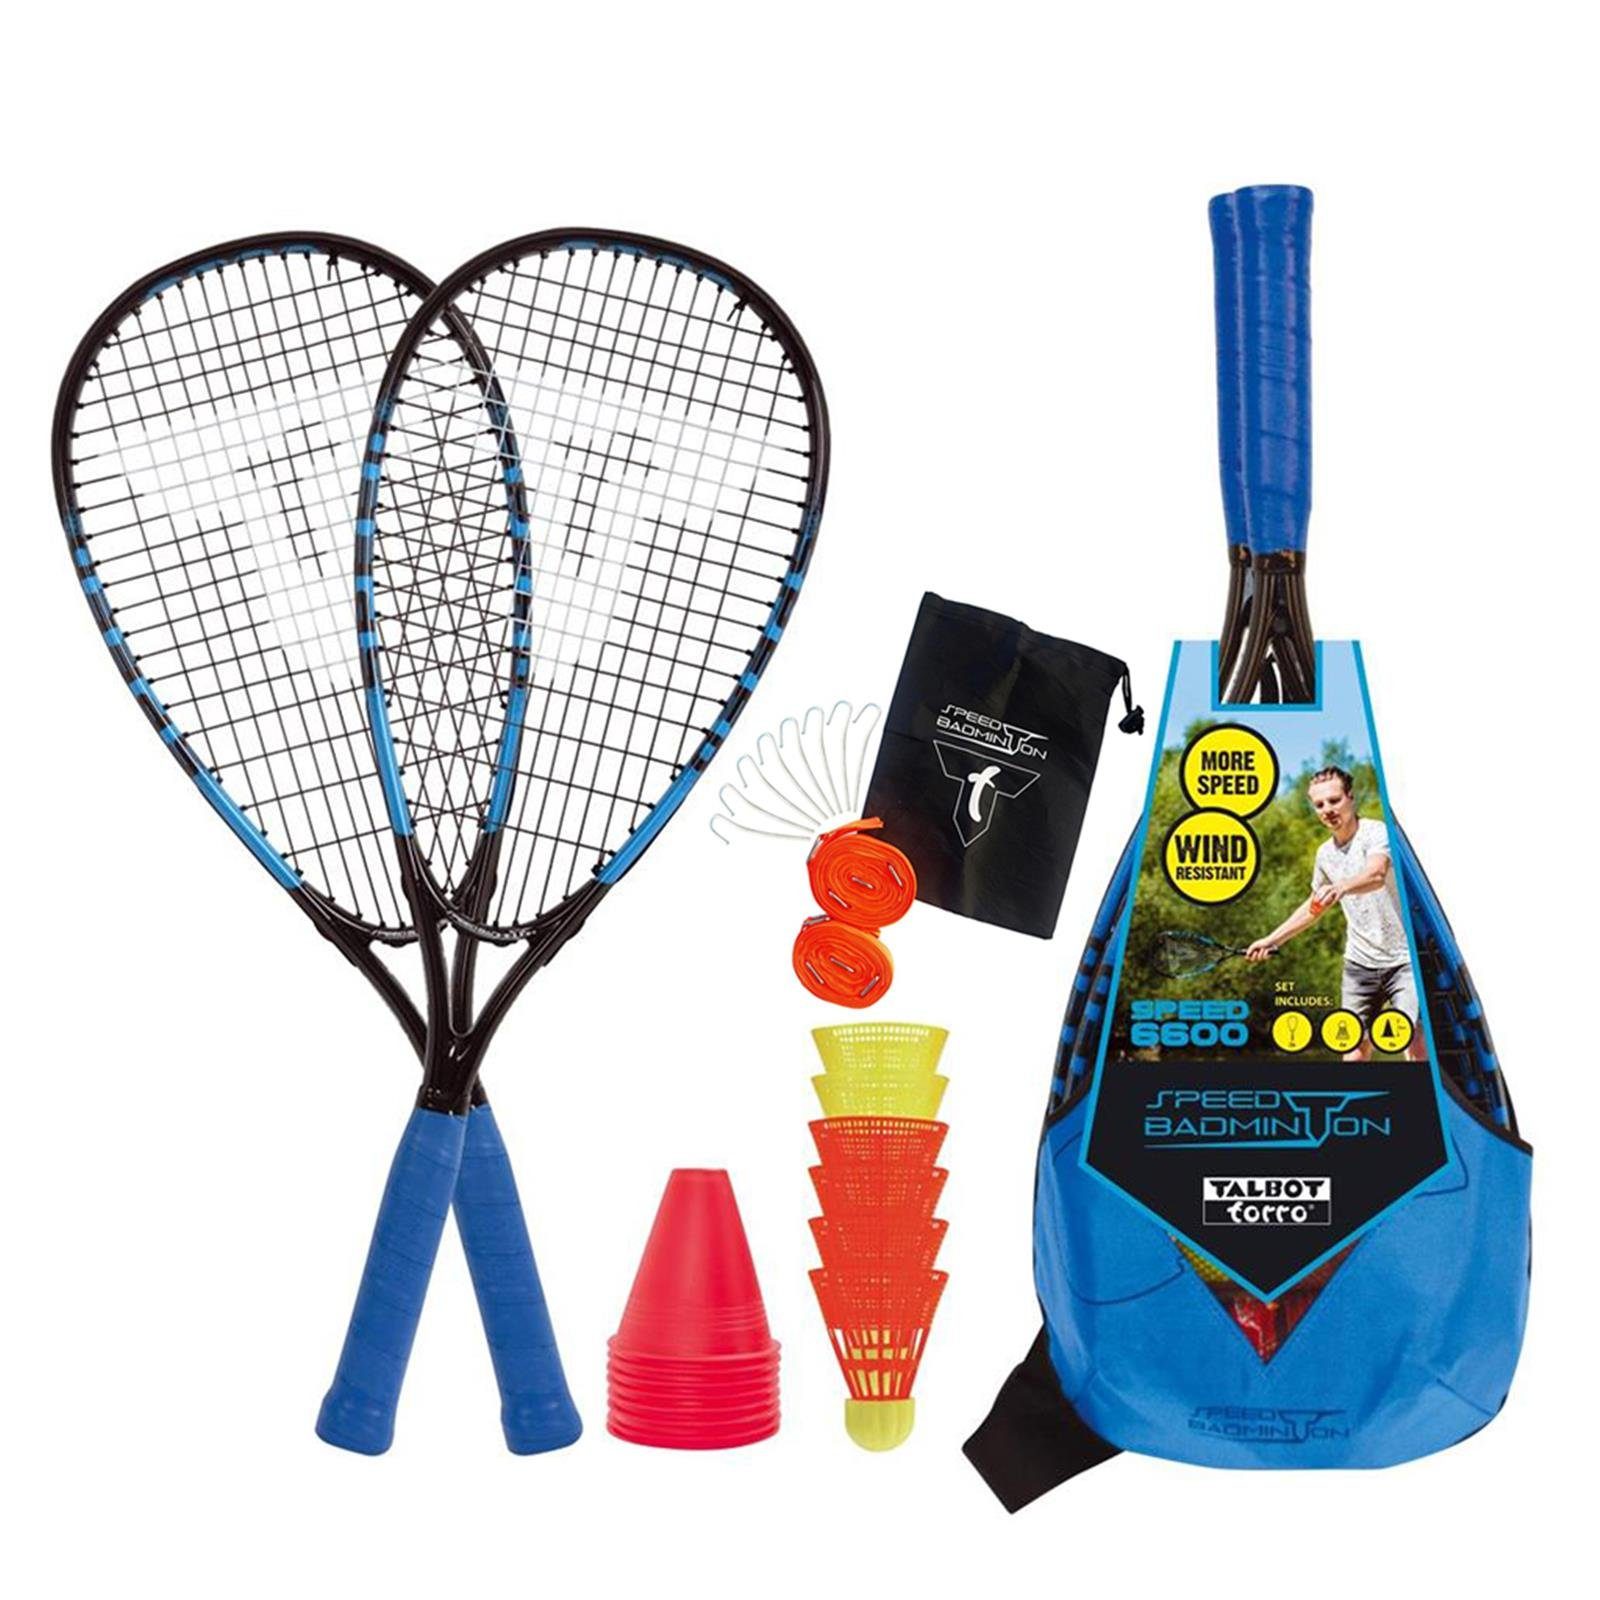 Talbot-Torro Speed-Badmintonschläger Speed-Badminton + Set Court 6600 Speed Line